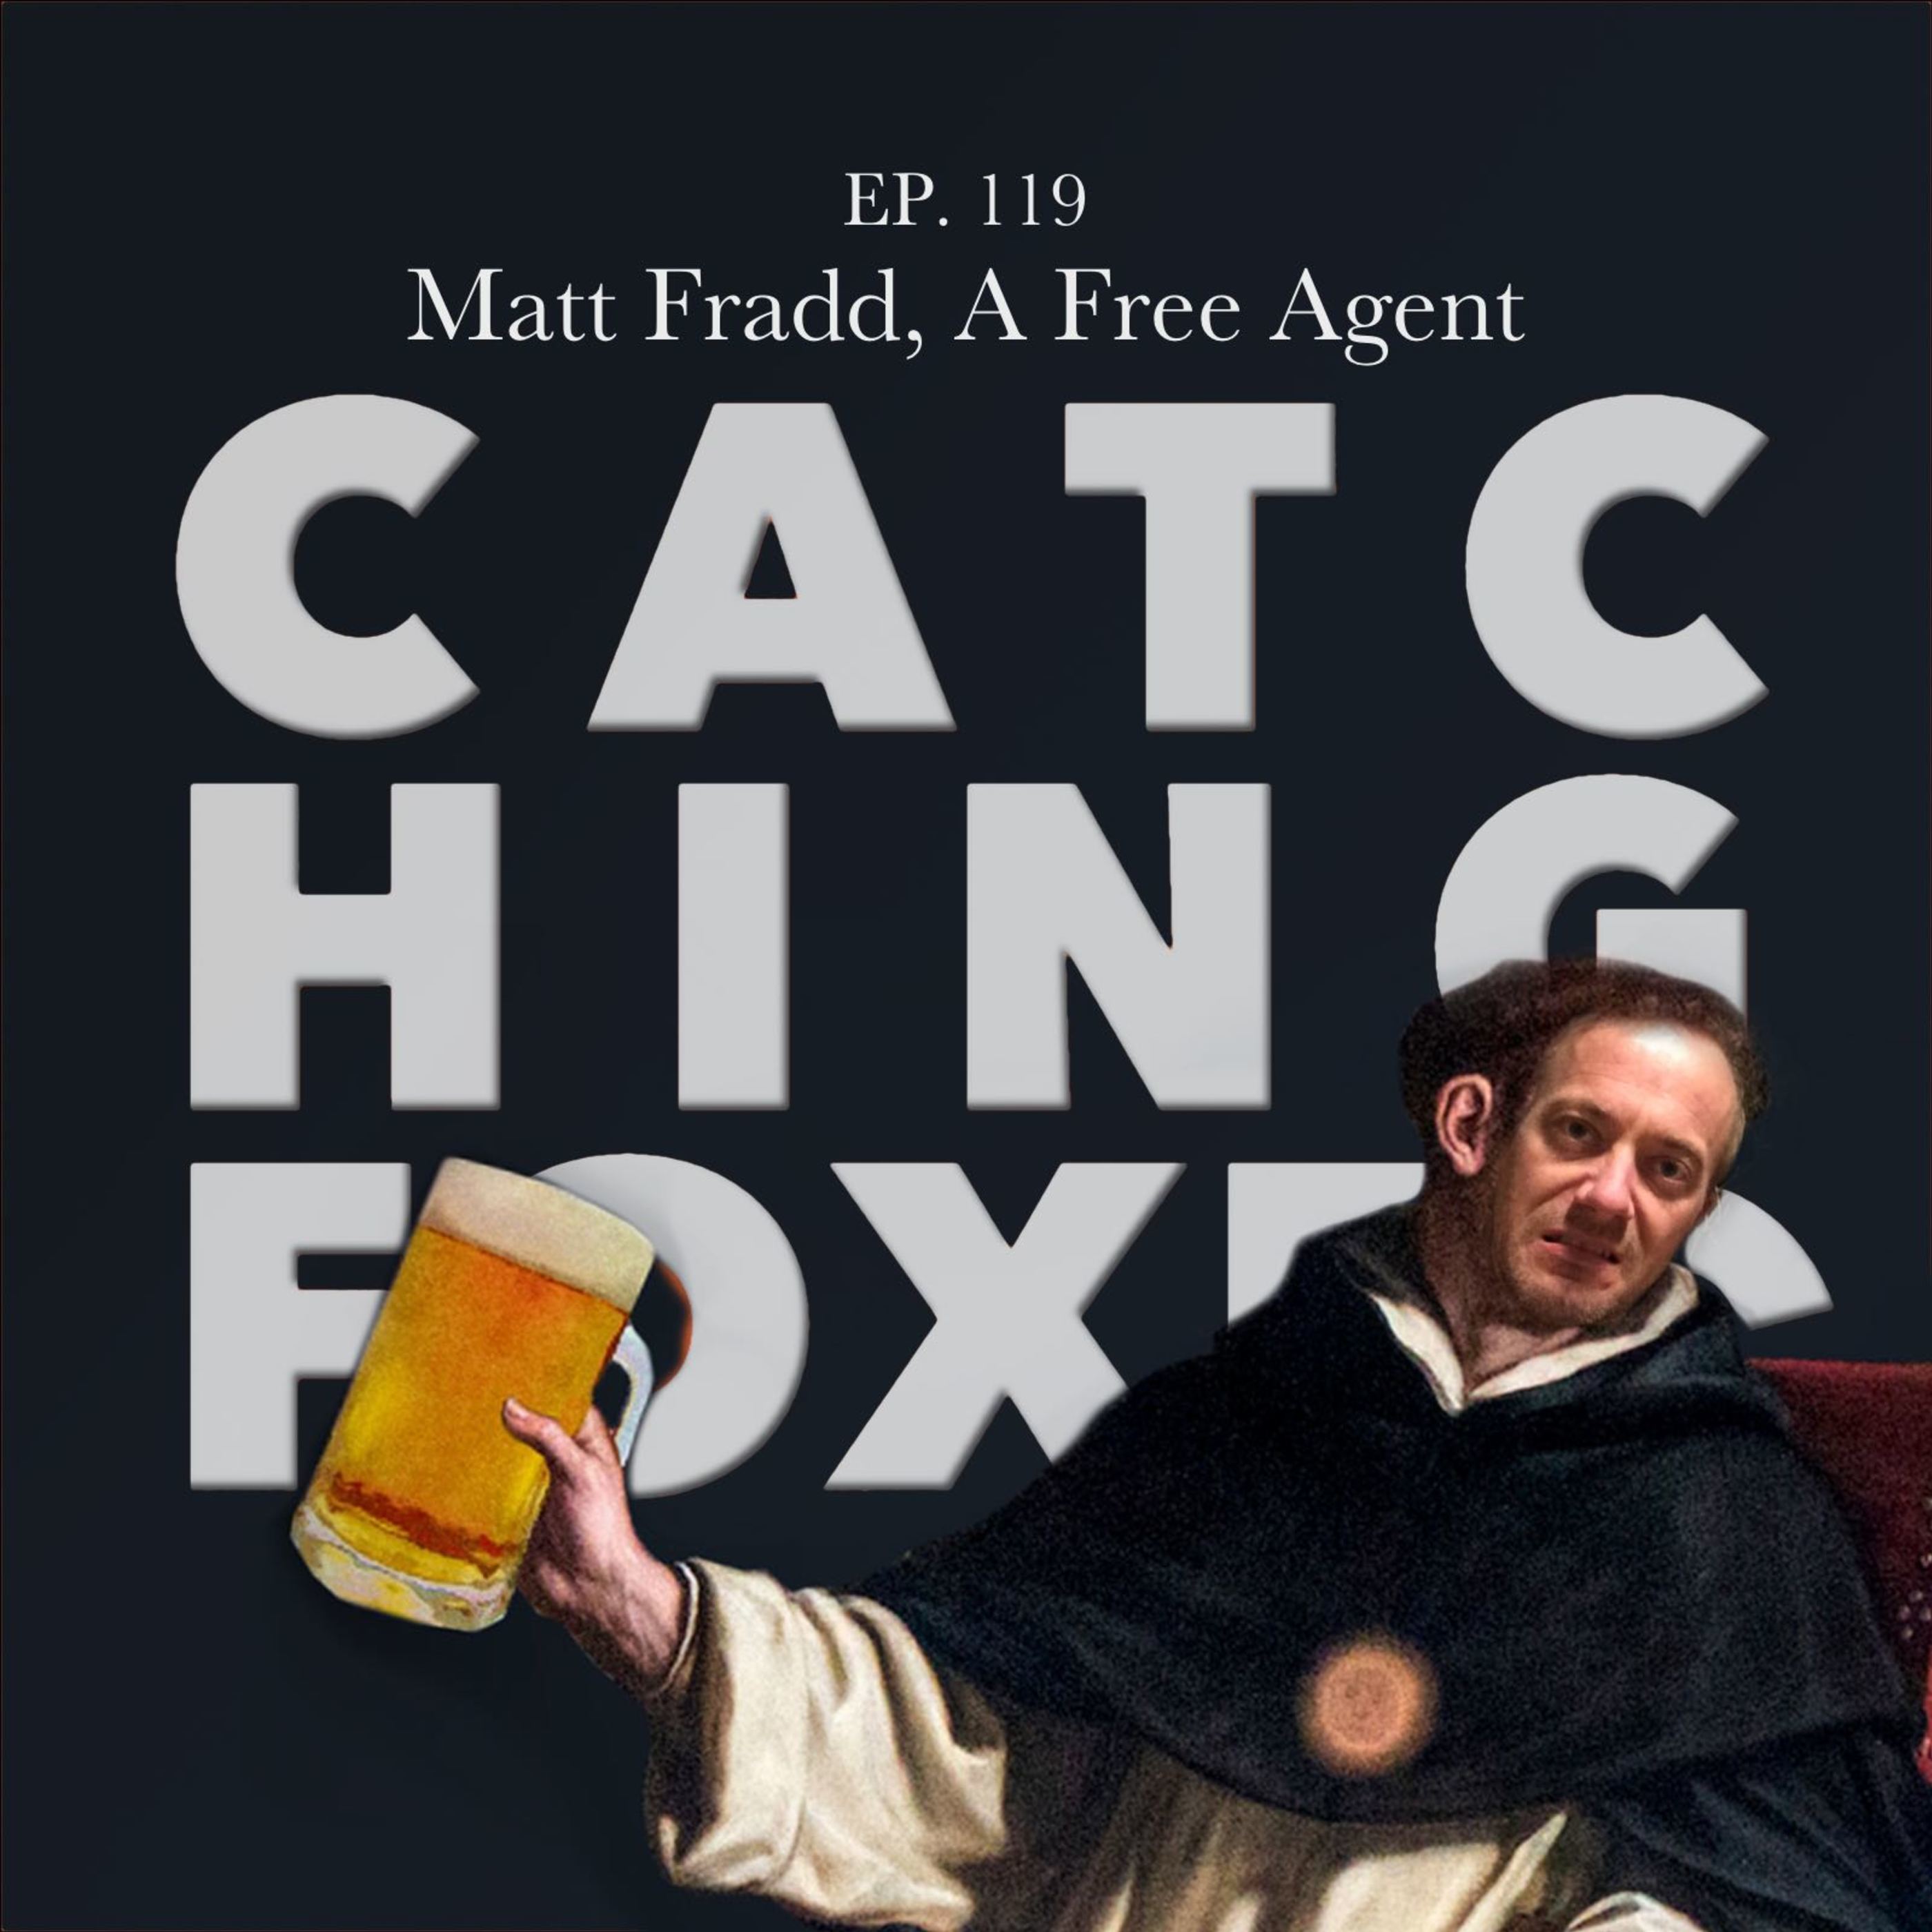 Matt Fradd, A Free Agent